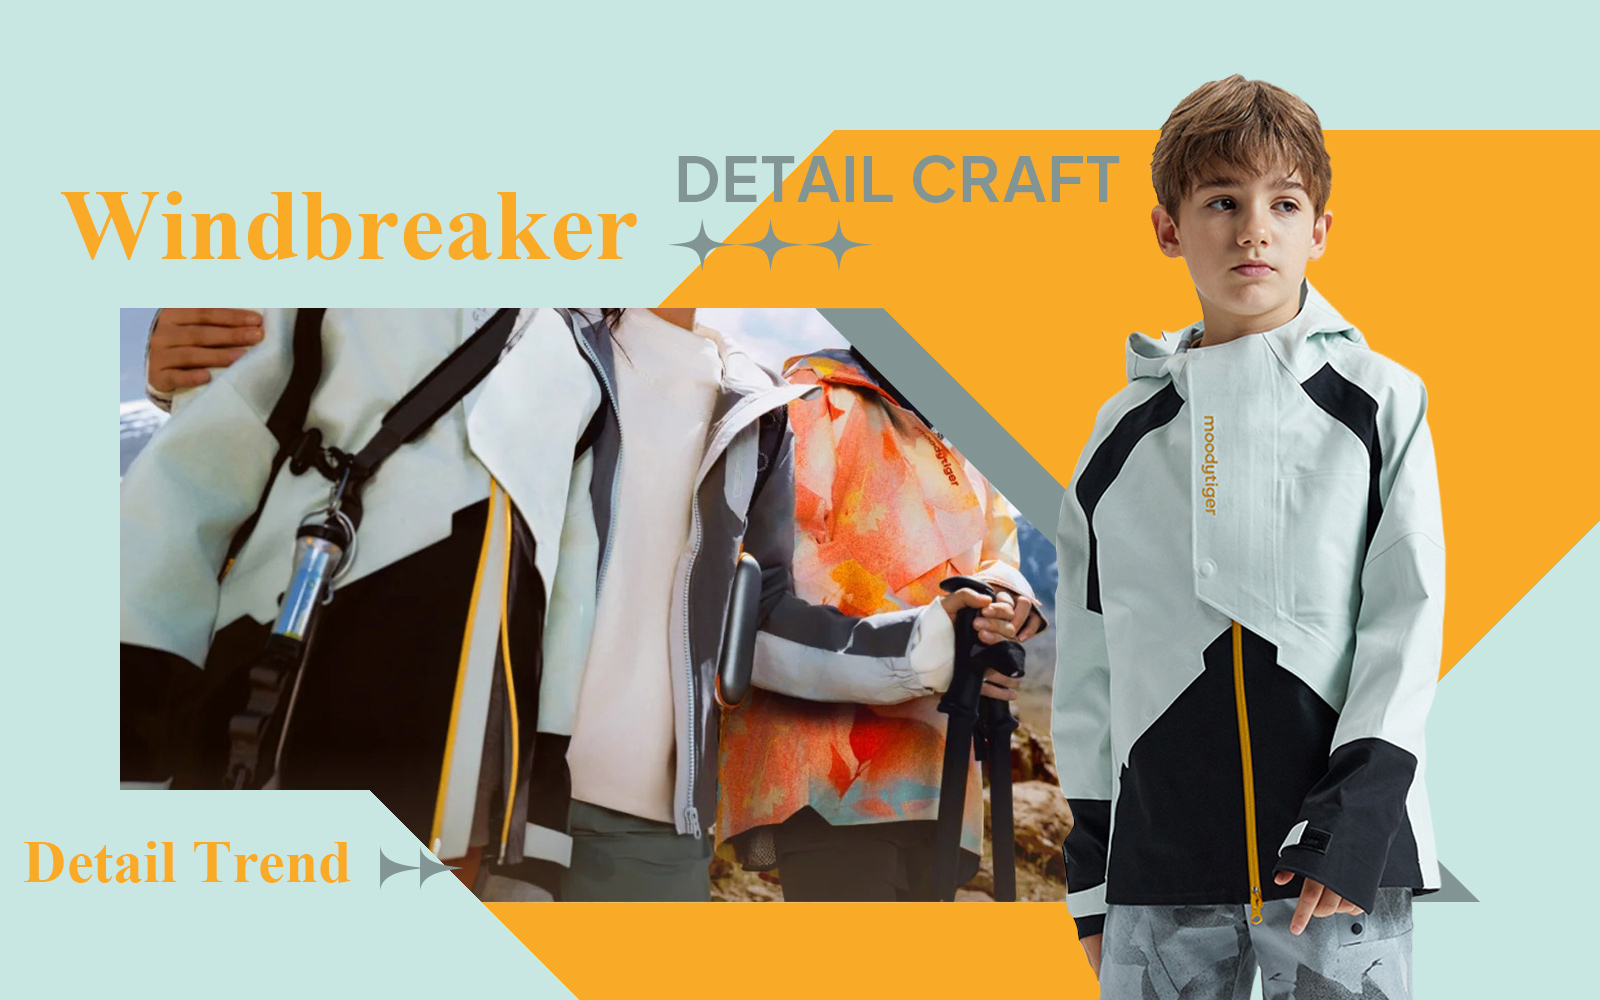 Windbreaker -- The Detail & Craft Trend for Boyswear